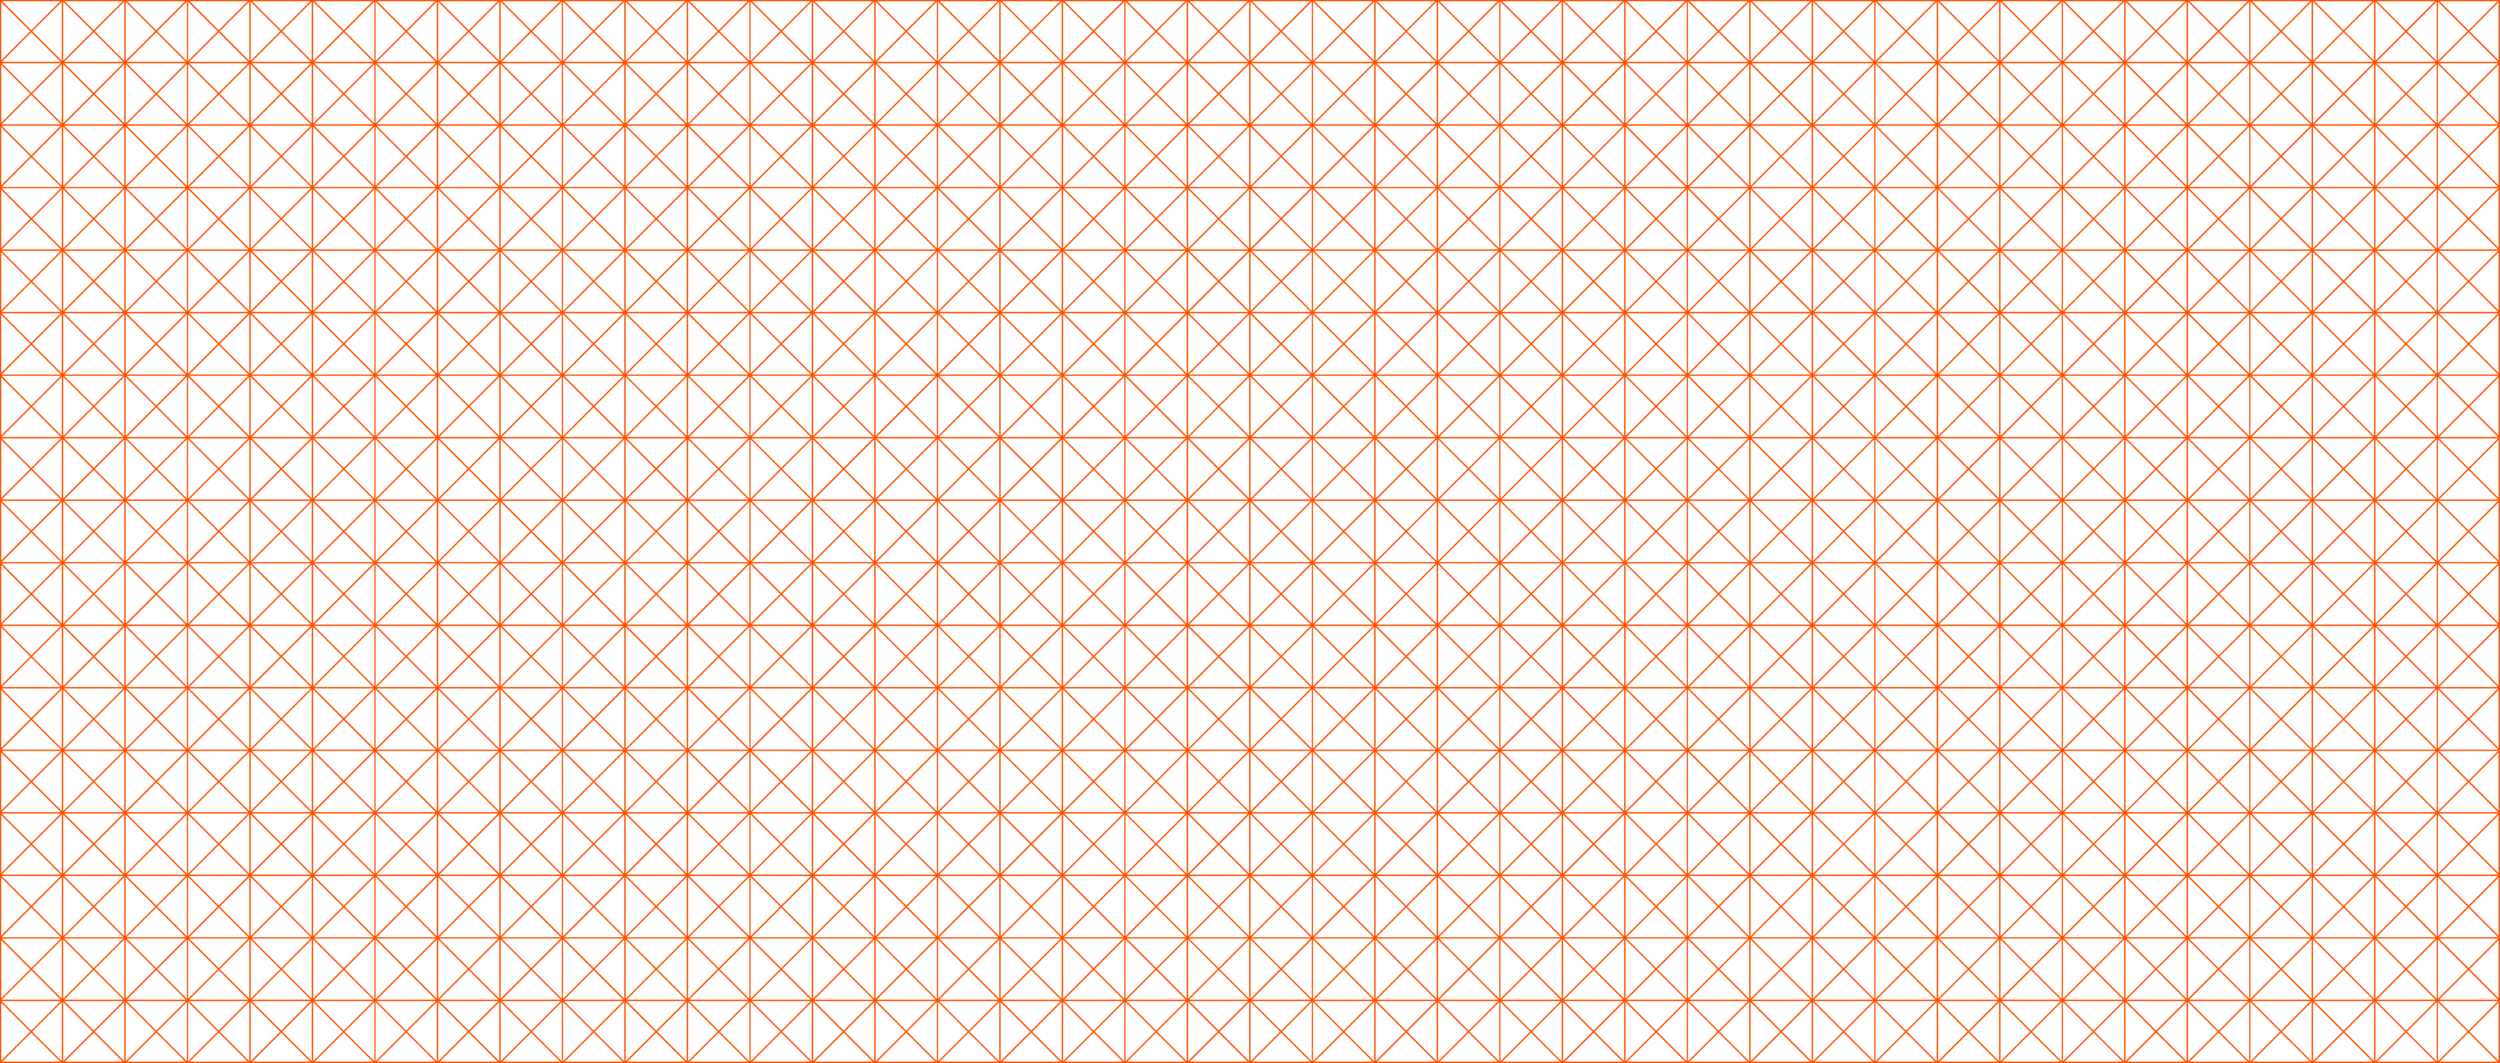 rplus-website-banner-grid-orange.png